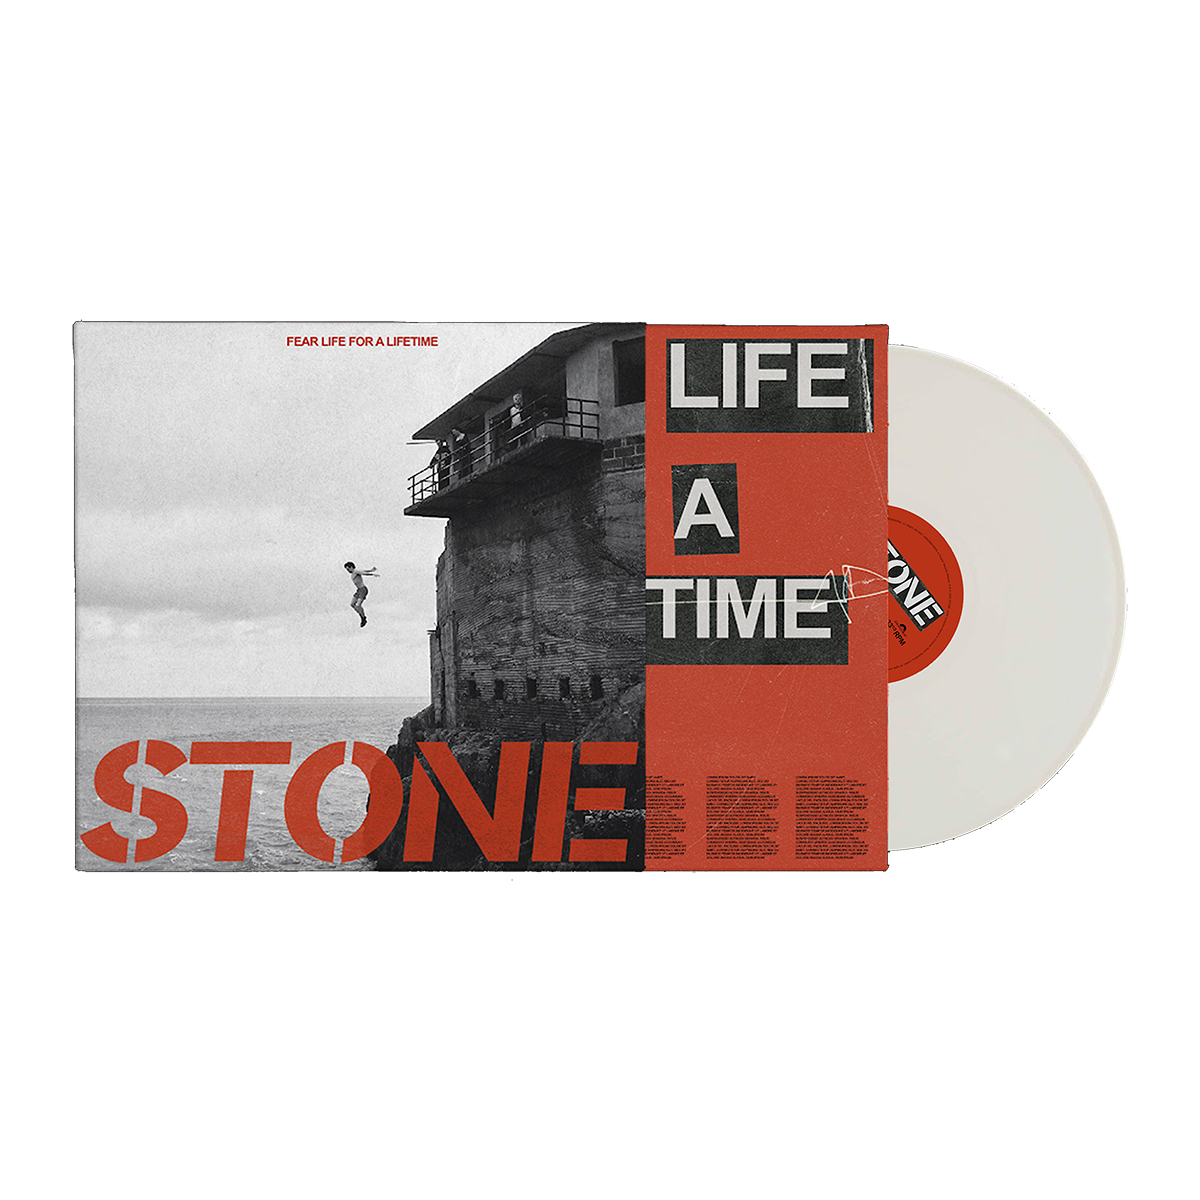 Fear Life For A Lifetime CD, Cassette + White Vinyl